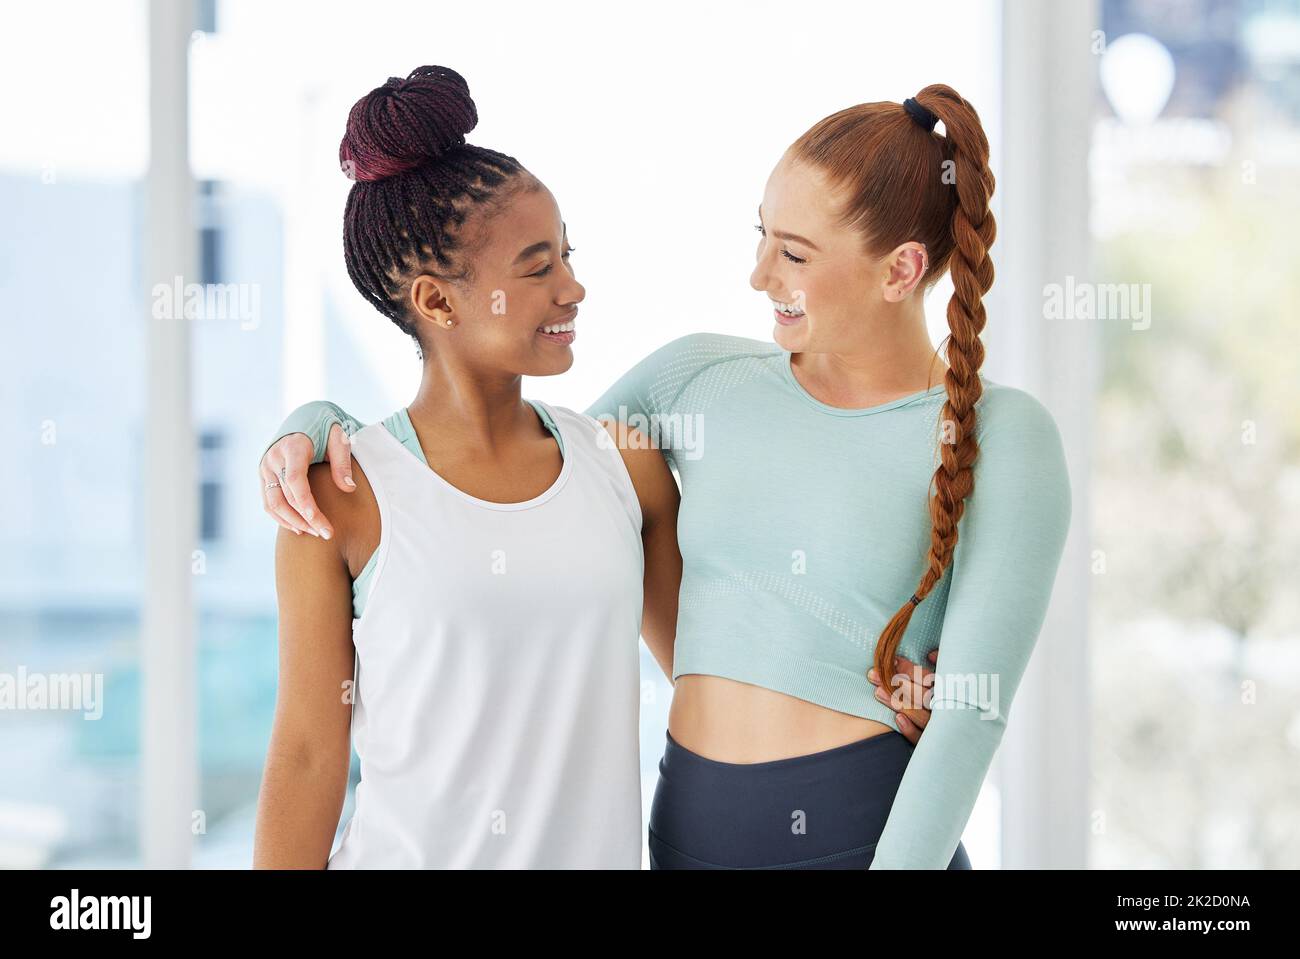 Gli amici che fanno lo yoga insieme attaccano insieme. Shot di due giovani donne in piedi insieme dopo aver praticato lo yoga. Foto Stock